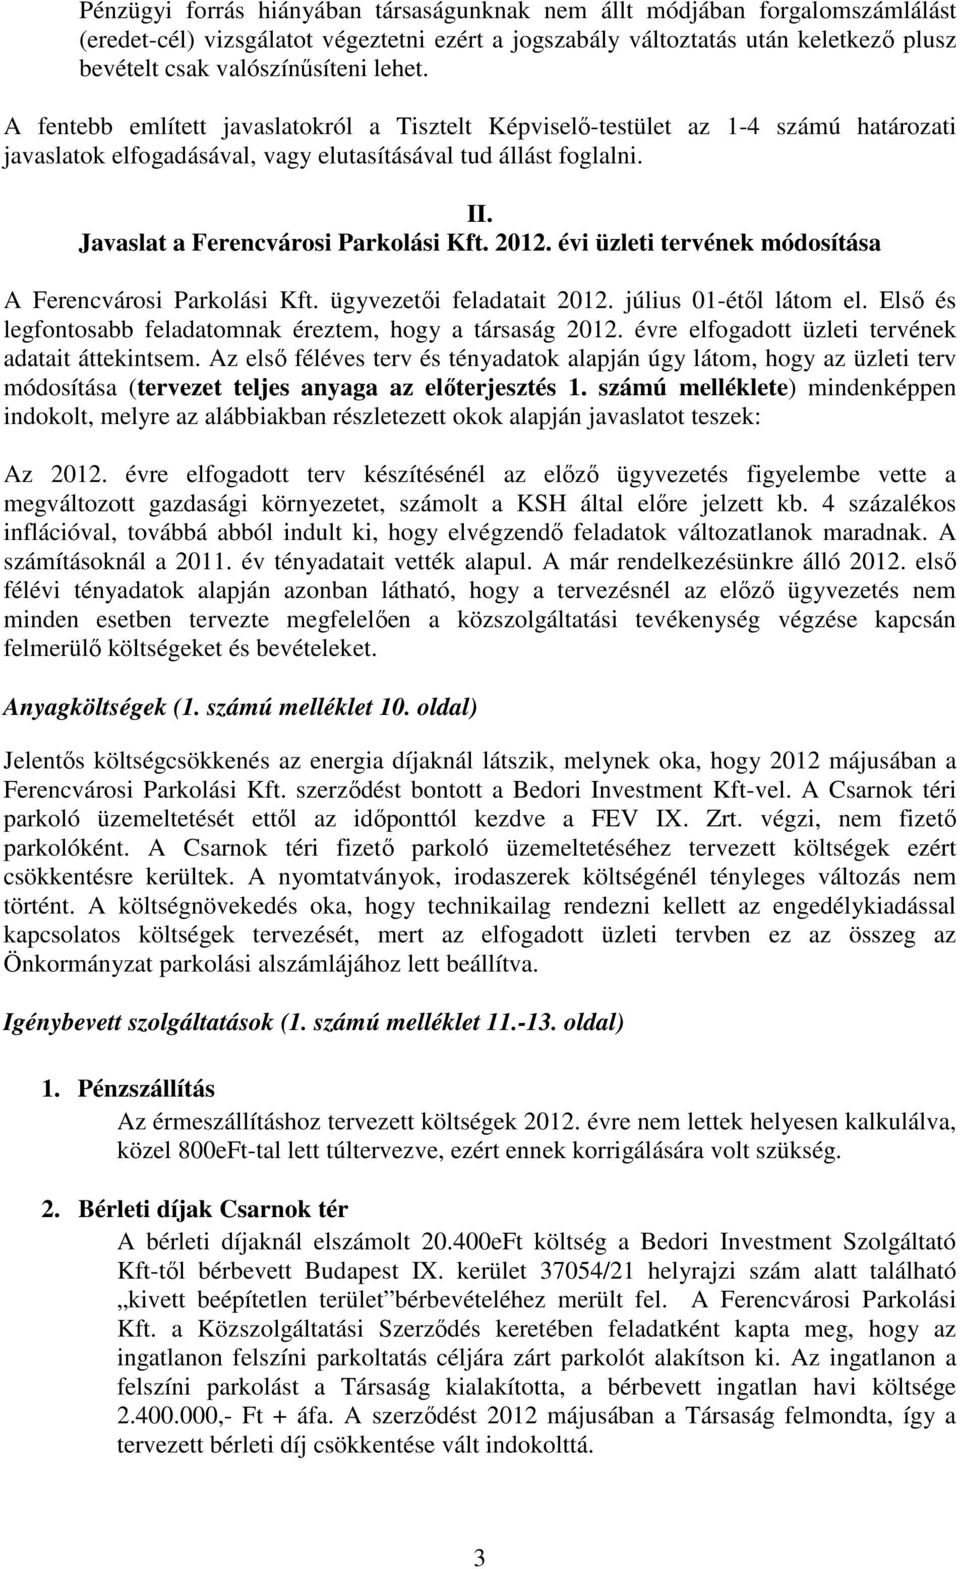 Javaslat a Ferencvárosi Parkolási Kft. 2012. évi üzleti tervének módosítása A Ferencvárosi Parkolási Kft. ügyvezetői feladatait 2012. július 01-étől látom el.